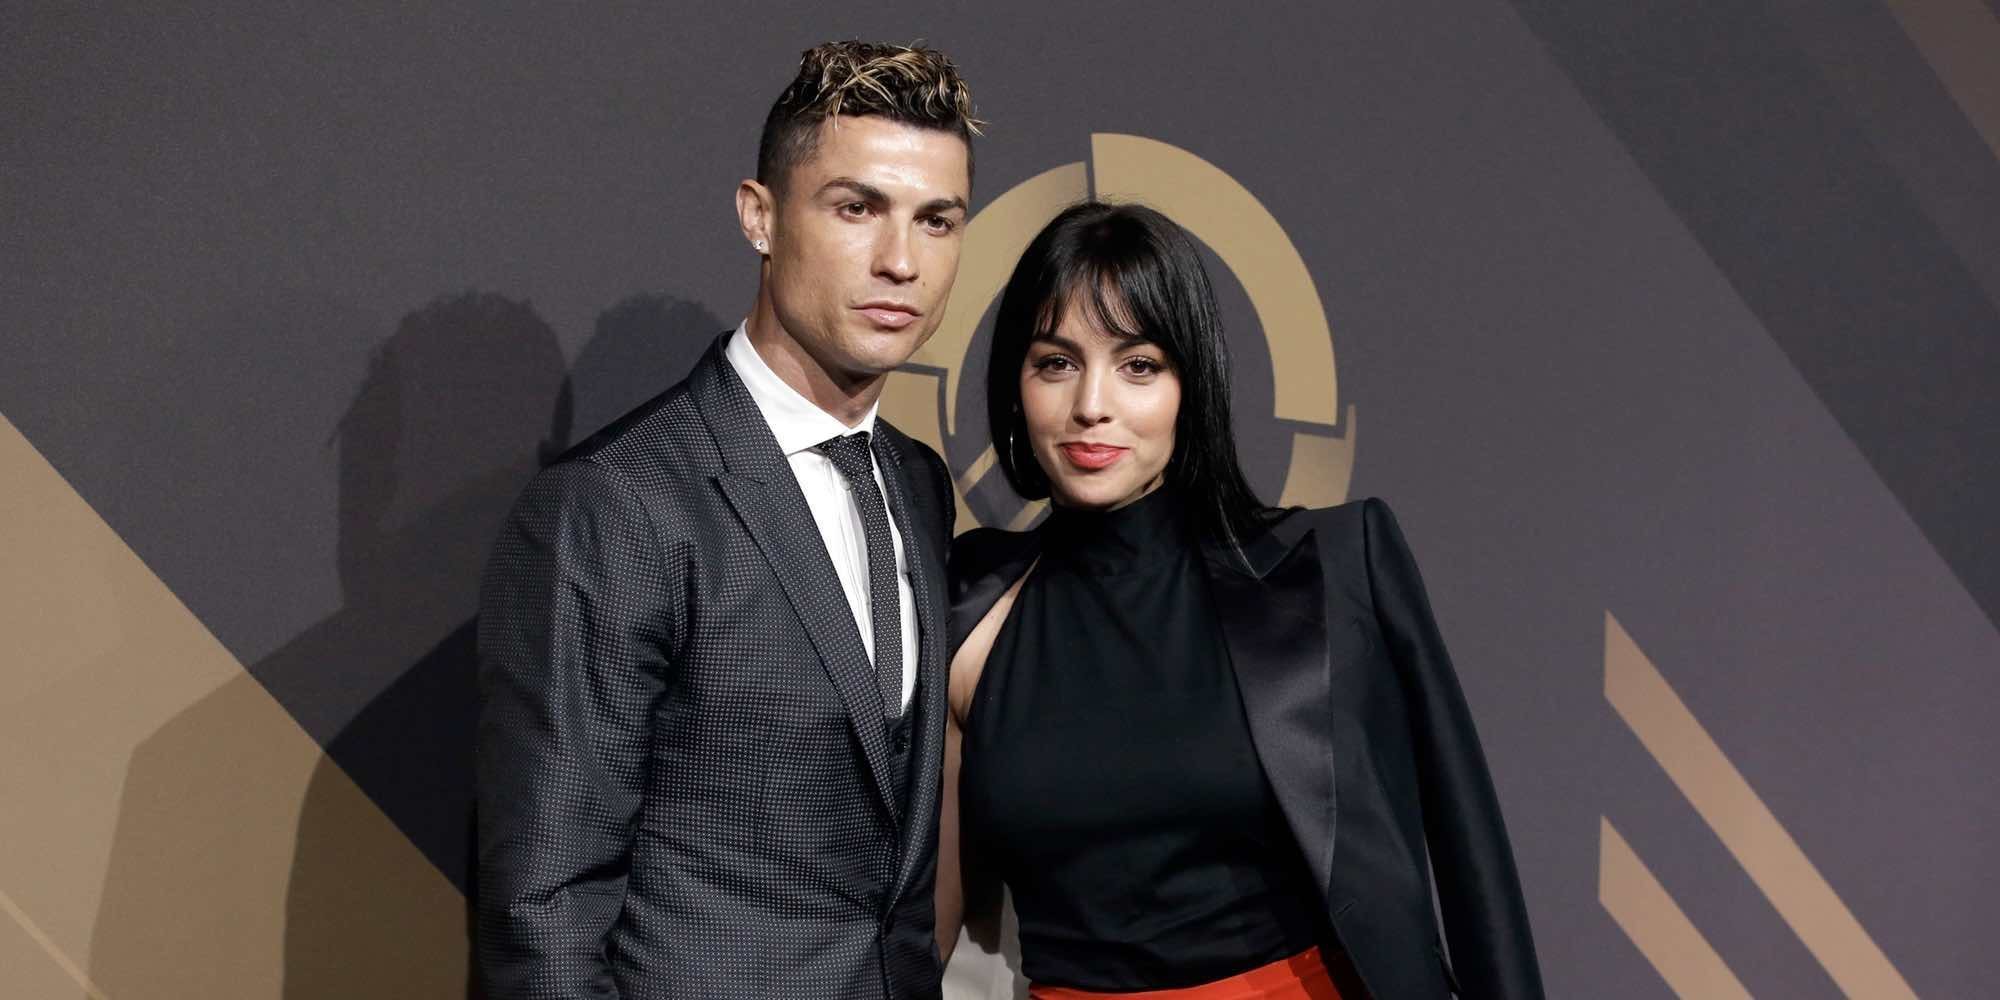 El romántico agradecimiento de Georgina Rodríguez a Cristiano Ronaldo tras su vuelta del Mundial